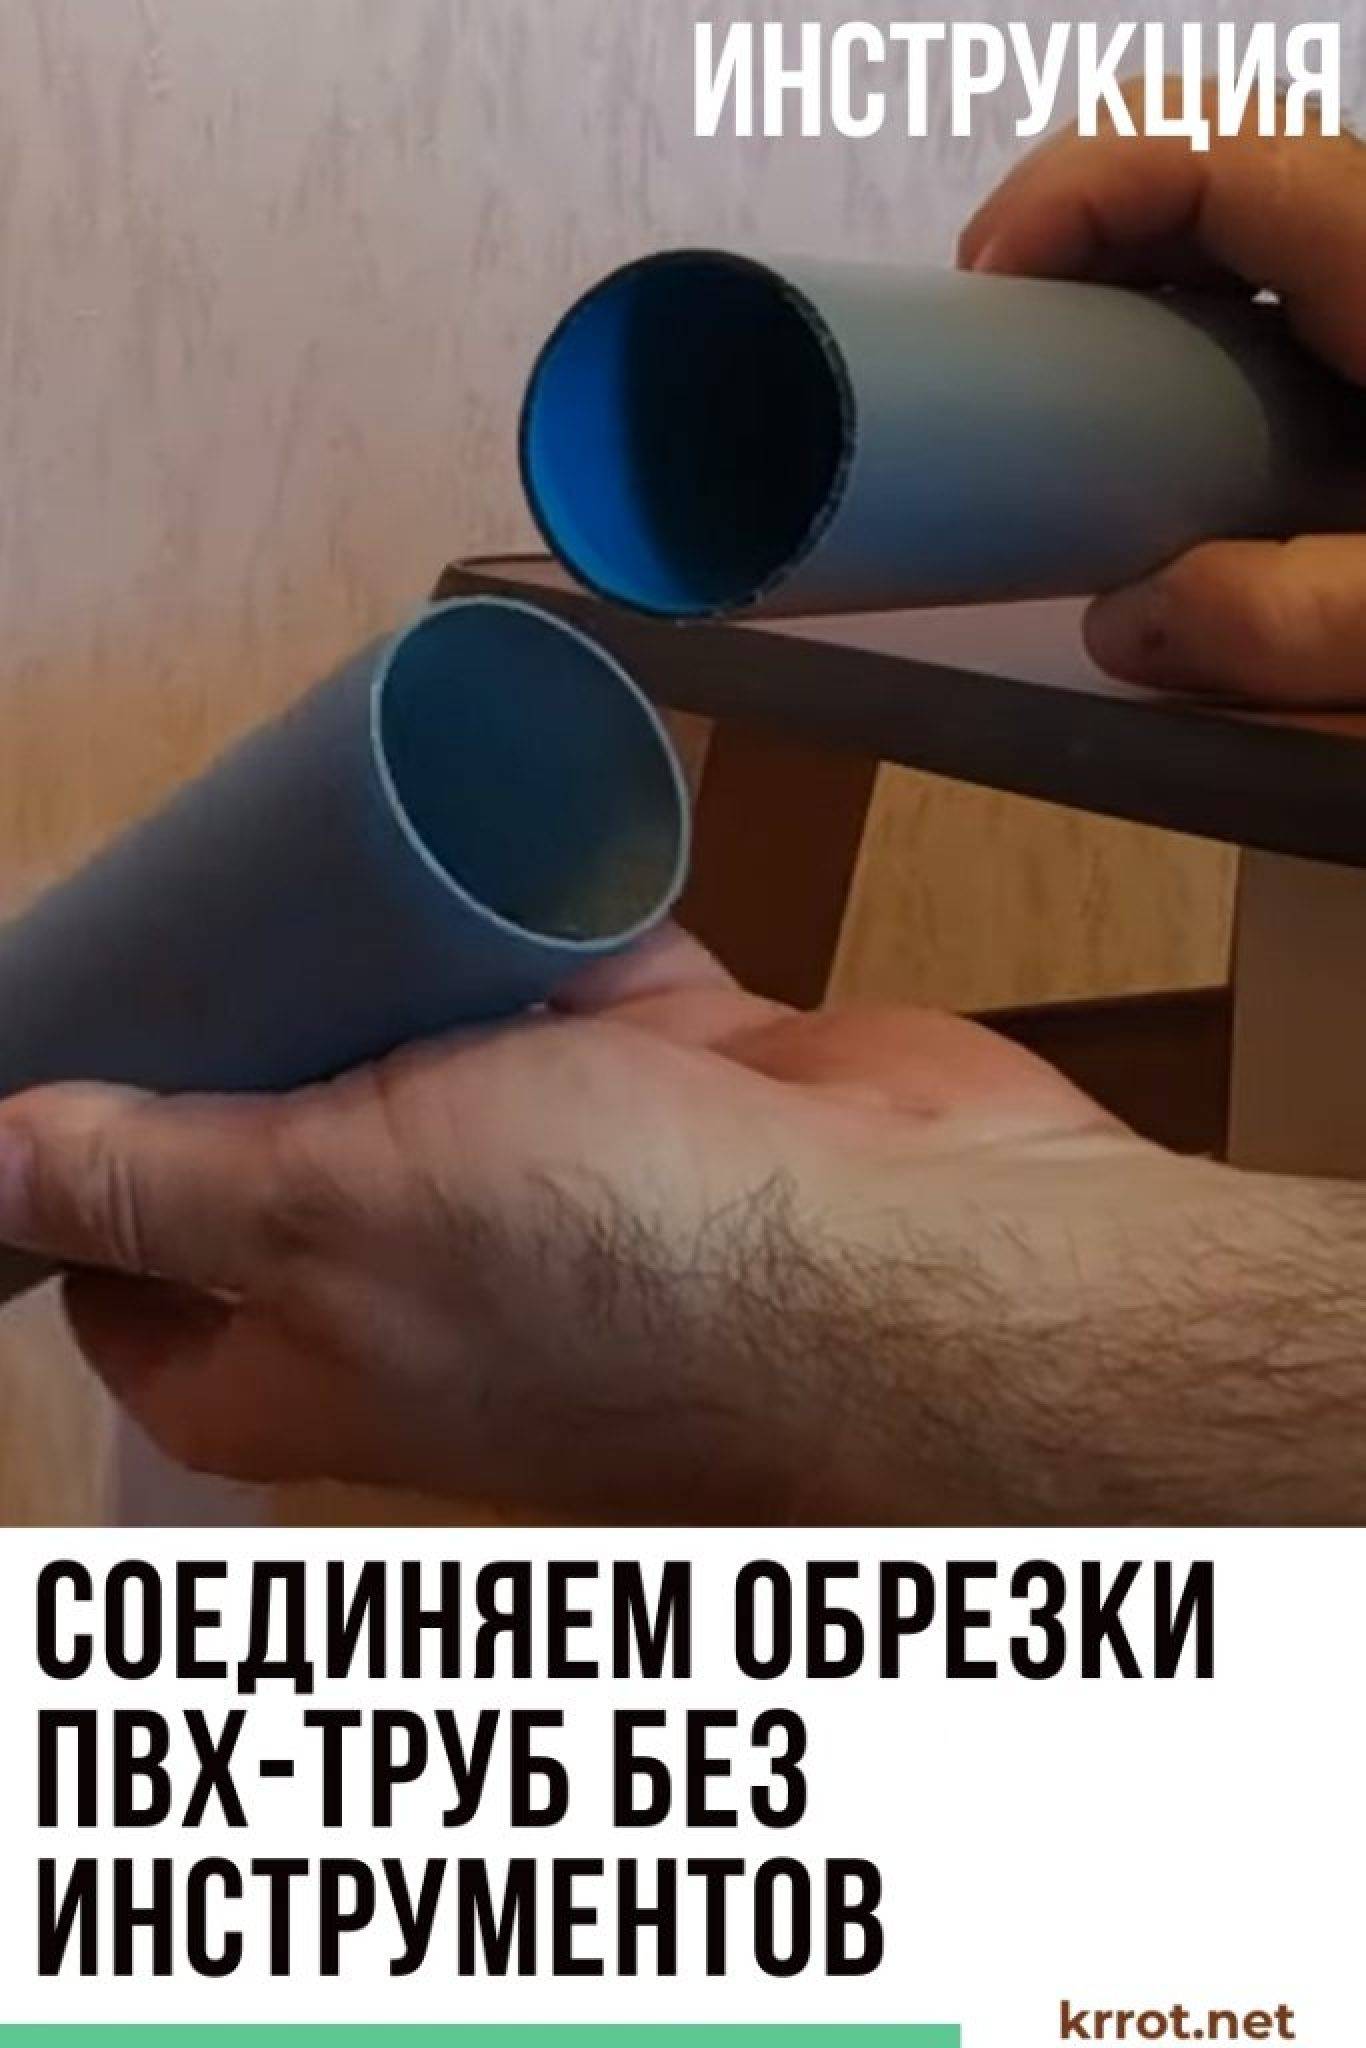 Соединение канализационных пластиковых труб: как соединить сантехнические трубы для канализации, как вставить трубу в трубу разного диаметра, стыковка, сварка